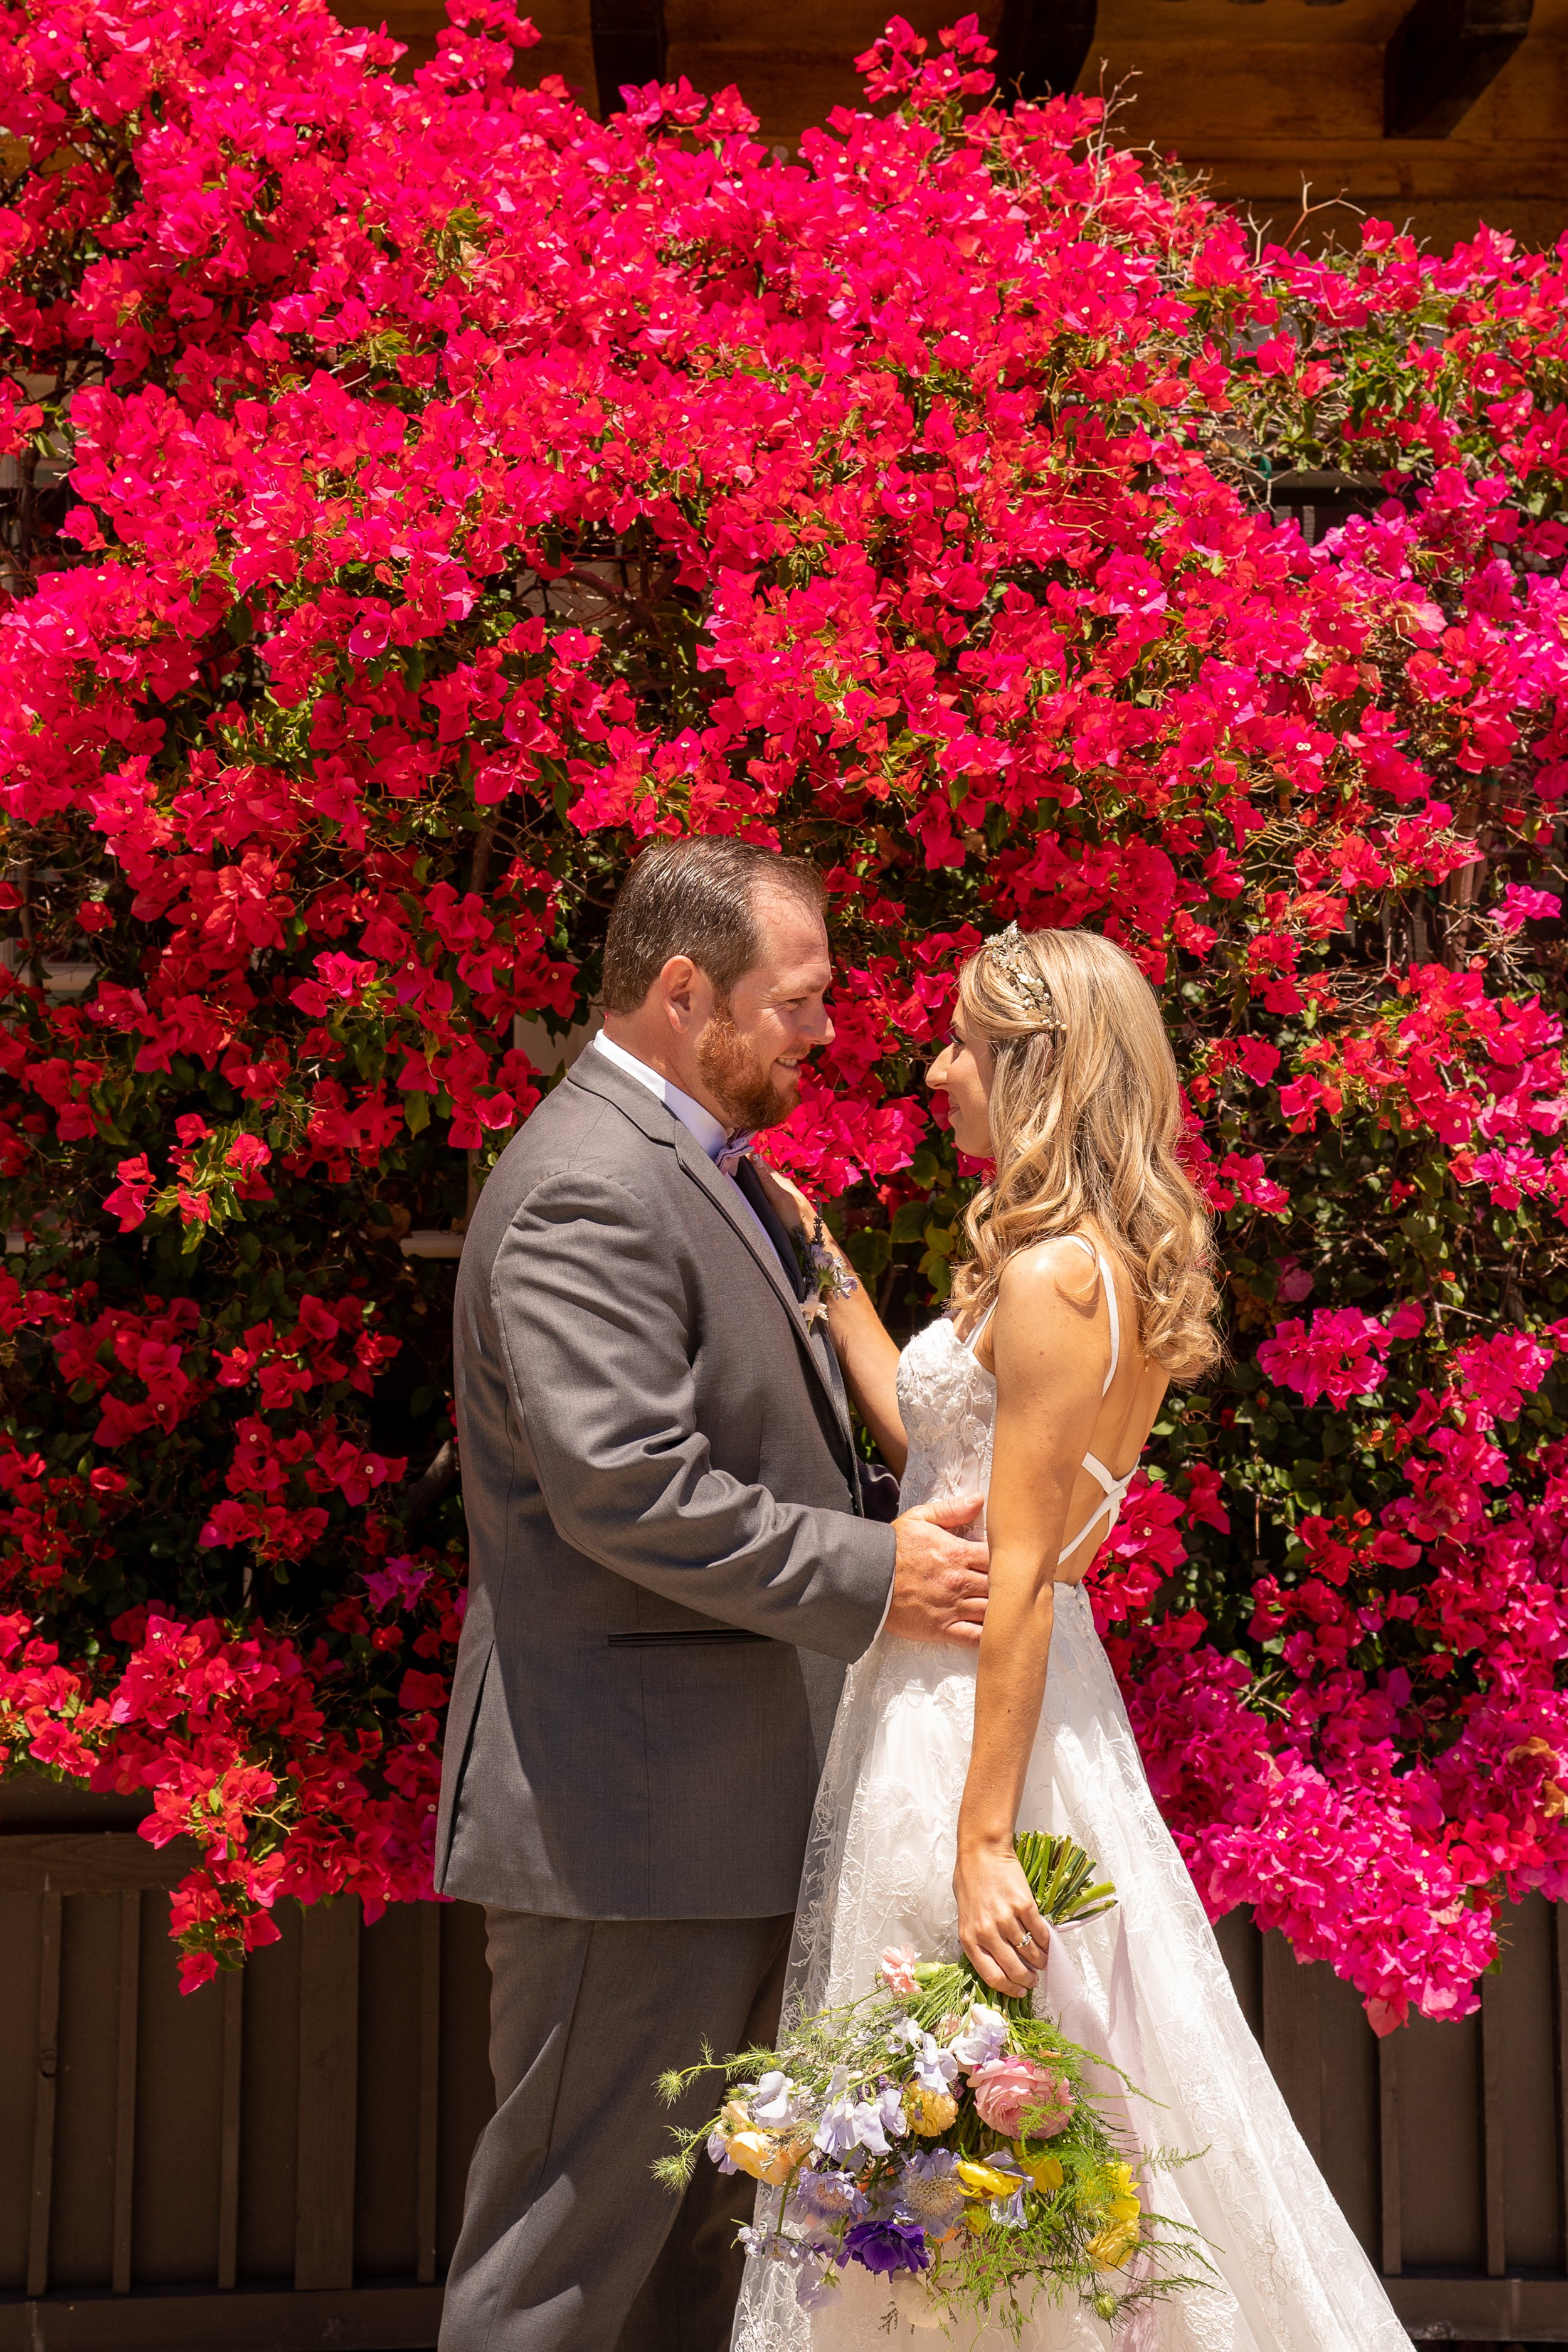 www.santabarbarawedding.com | Santa Barbara Club | Jensen Sutta | Julie Steele | Breanna Jane Botanicals | Tomiko Taft | Breanna Wilcox | Bride and Groom in Front of Pink Flower Wall